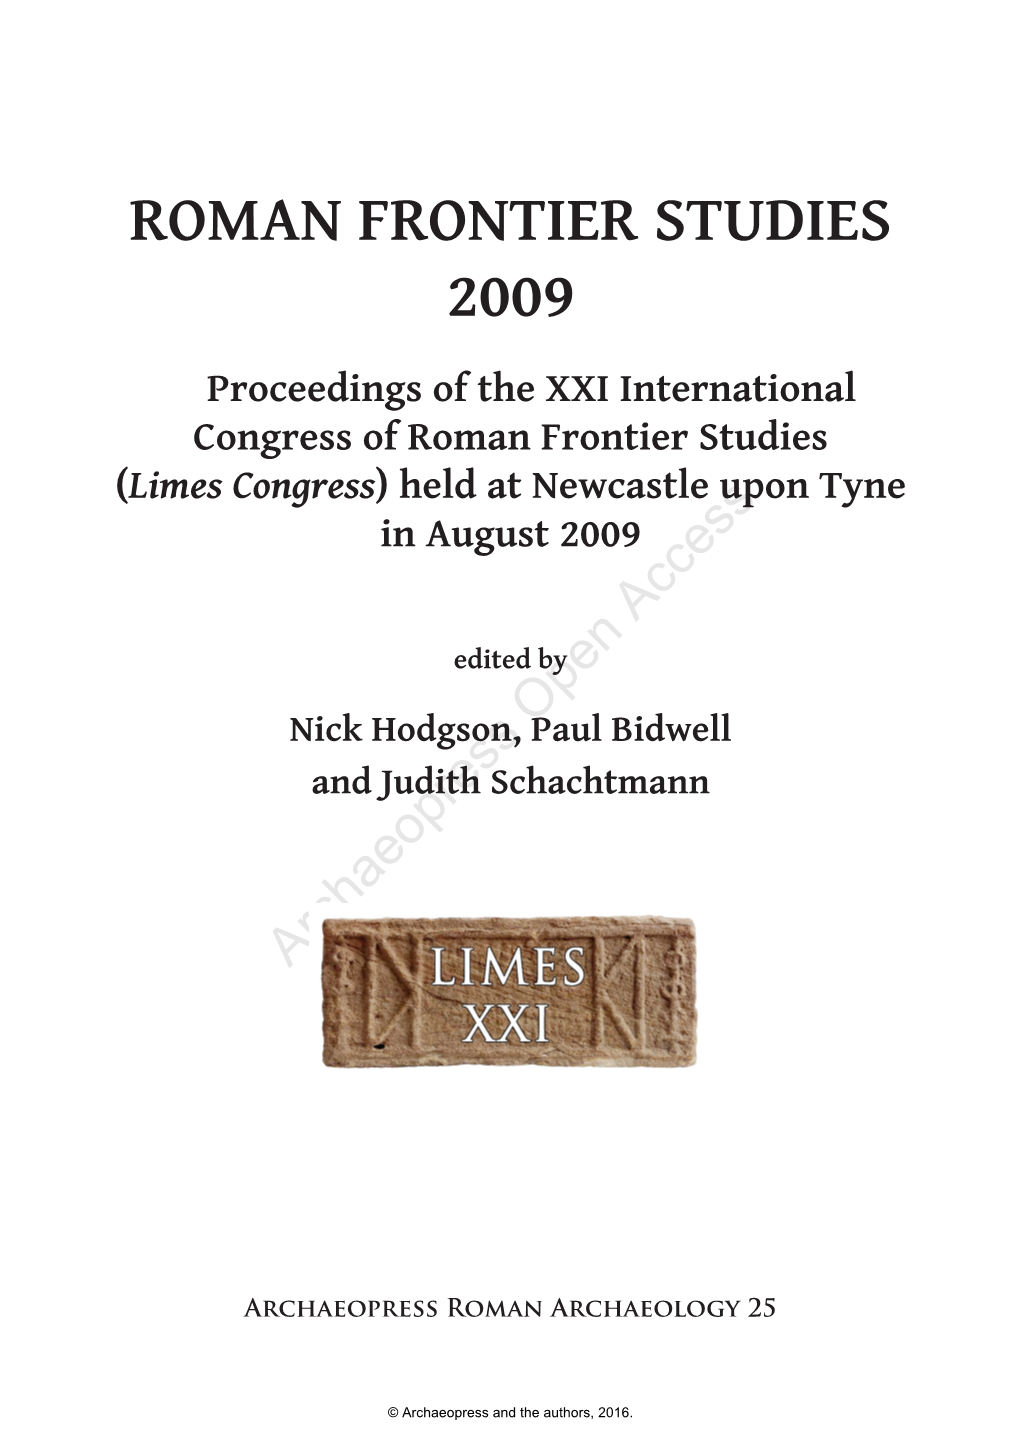 Roman Frontier Studies 2009